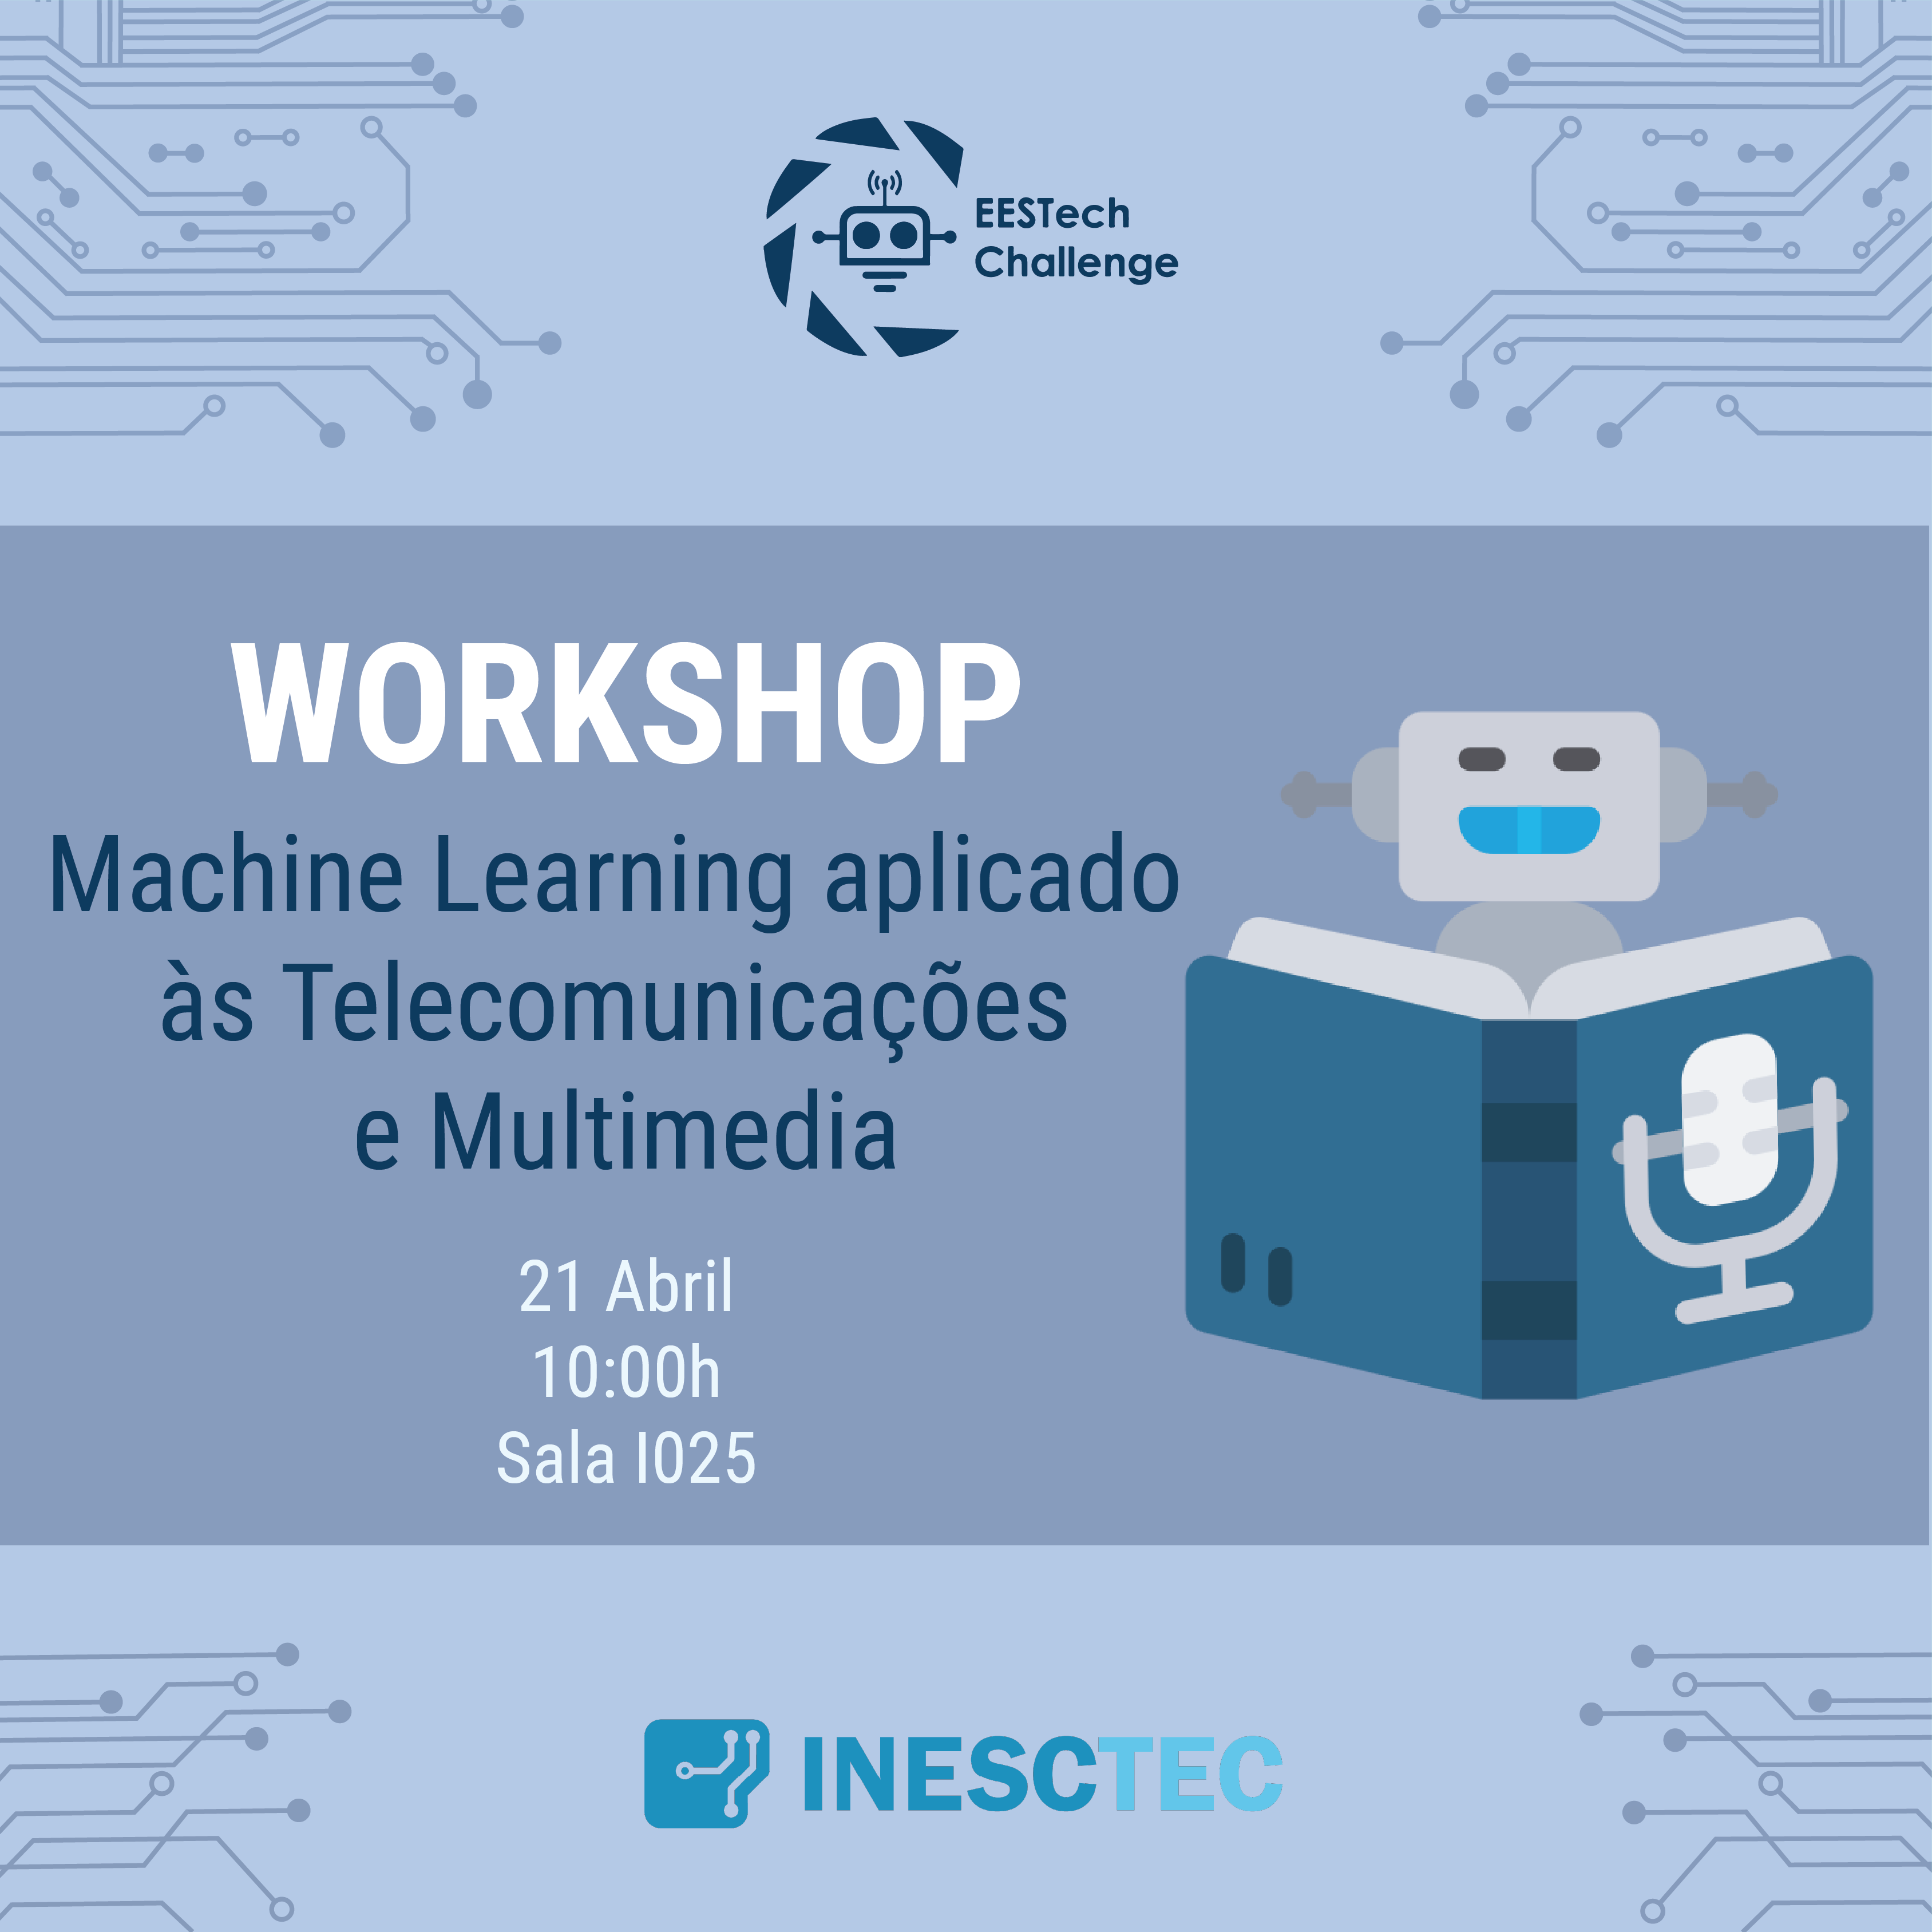 Workshop “Machine Learning aplicado às Telecomunicações e Multimedia” by INESC TEC